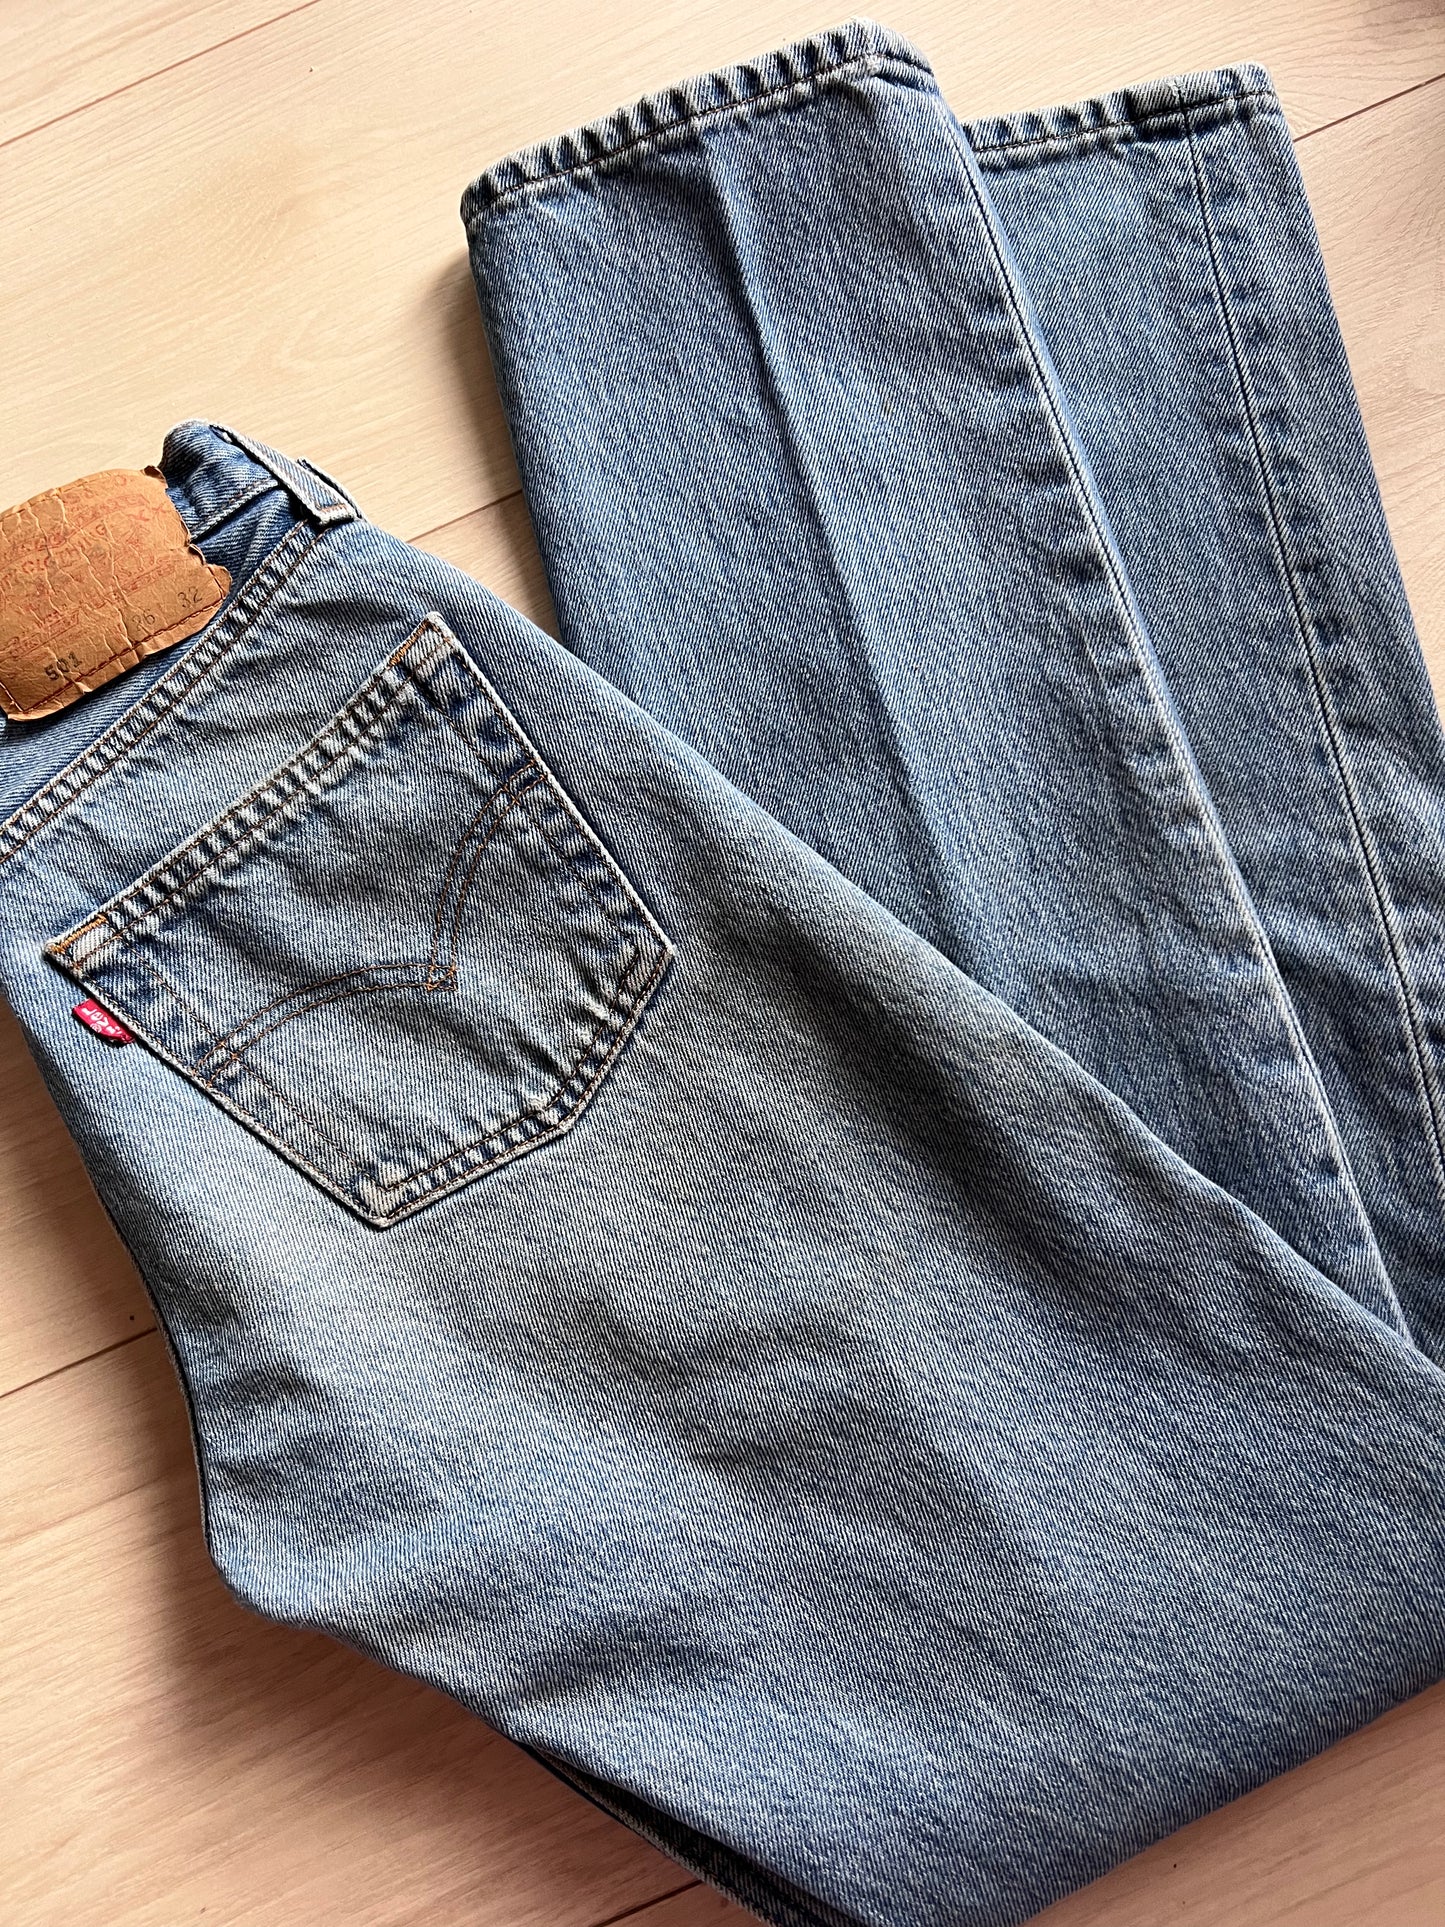 Size 24 Vintage Levi’s 501 jeans